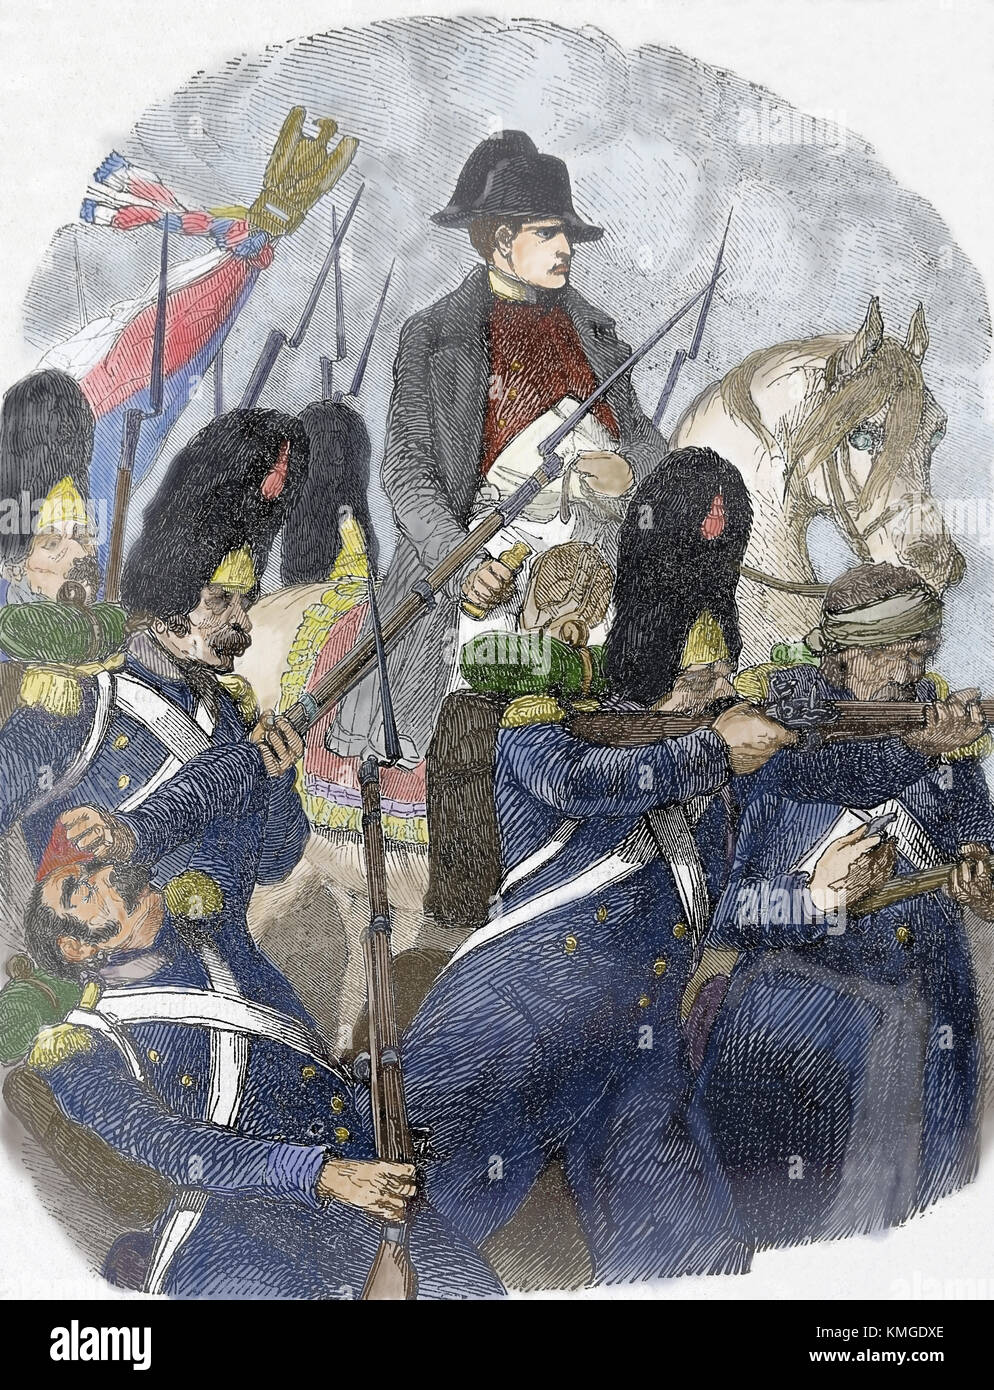 Schlacht von Waterloo (18. Juni 1815). Die kriegführenden Parteien: Französische Kaiserreich und seveth Koalition. Gravieren, 19. Stockfoto